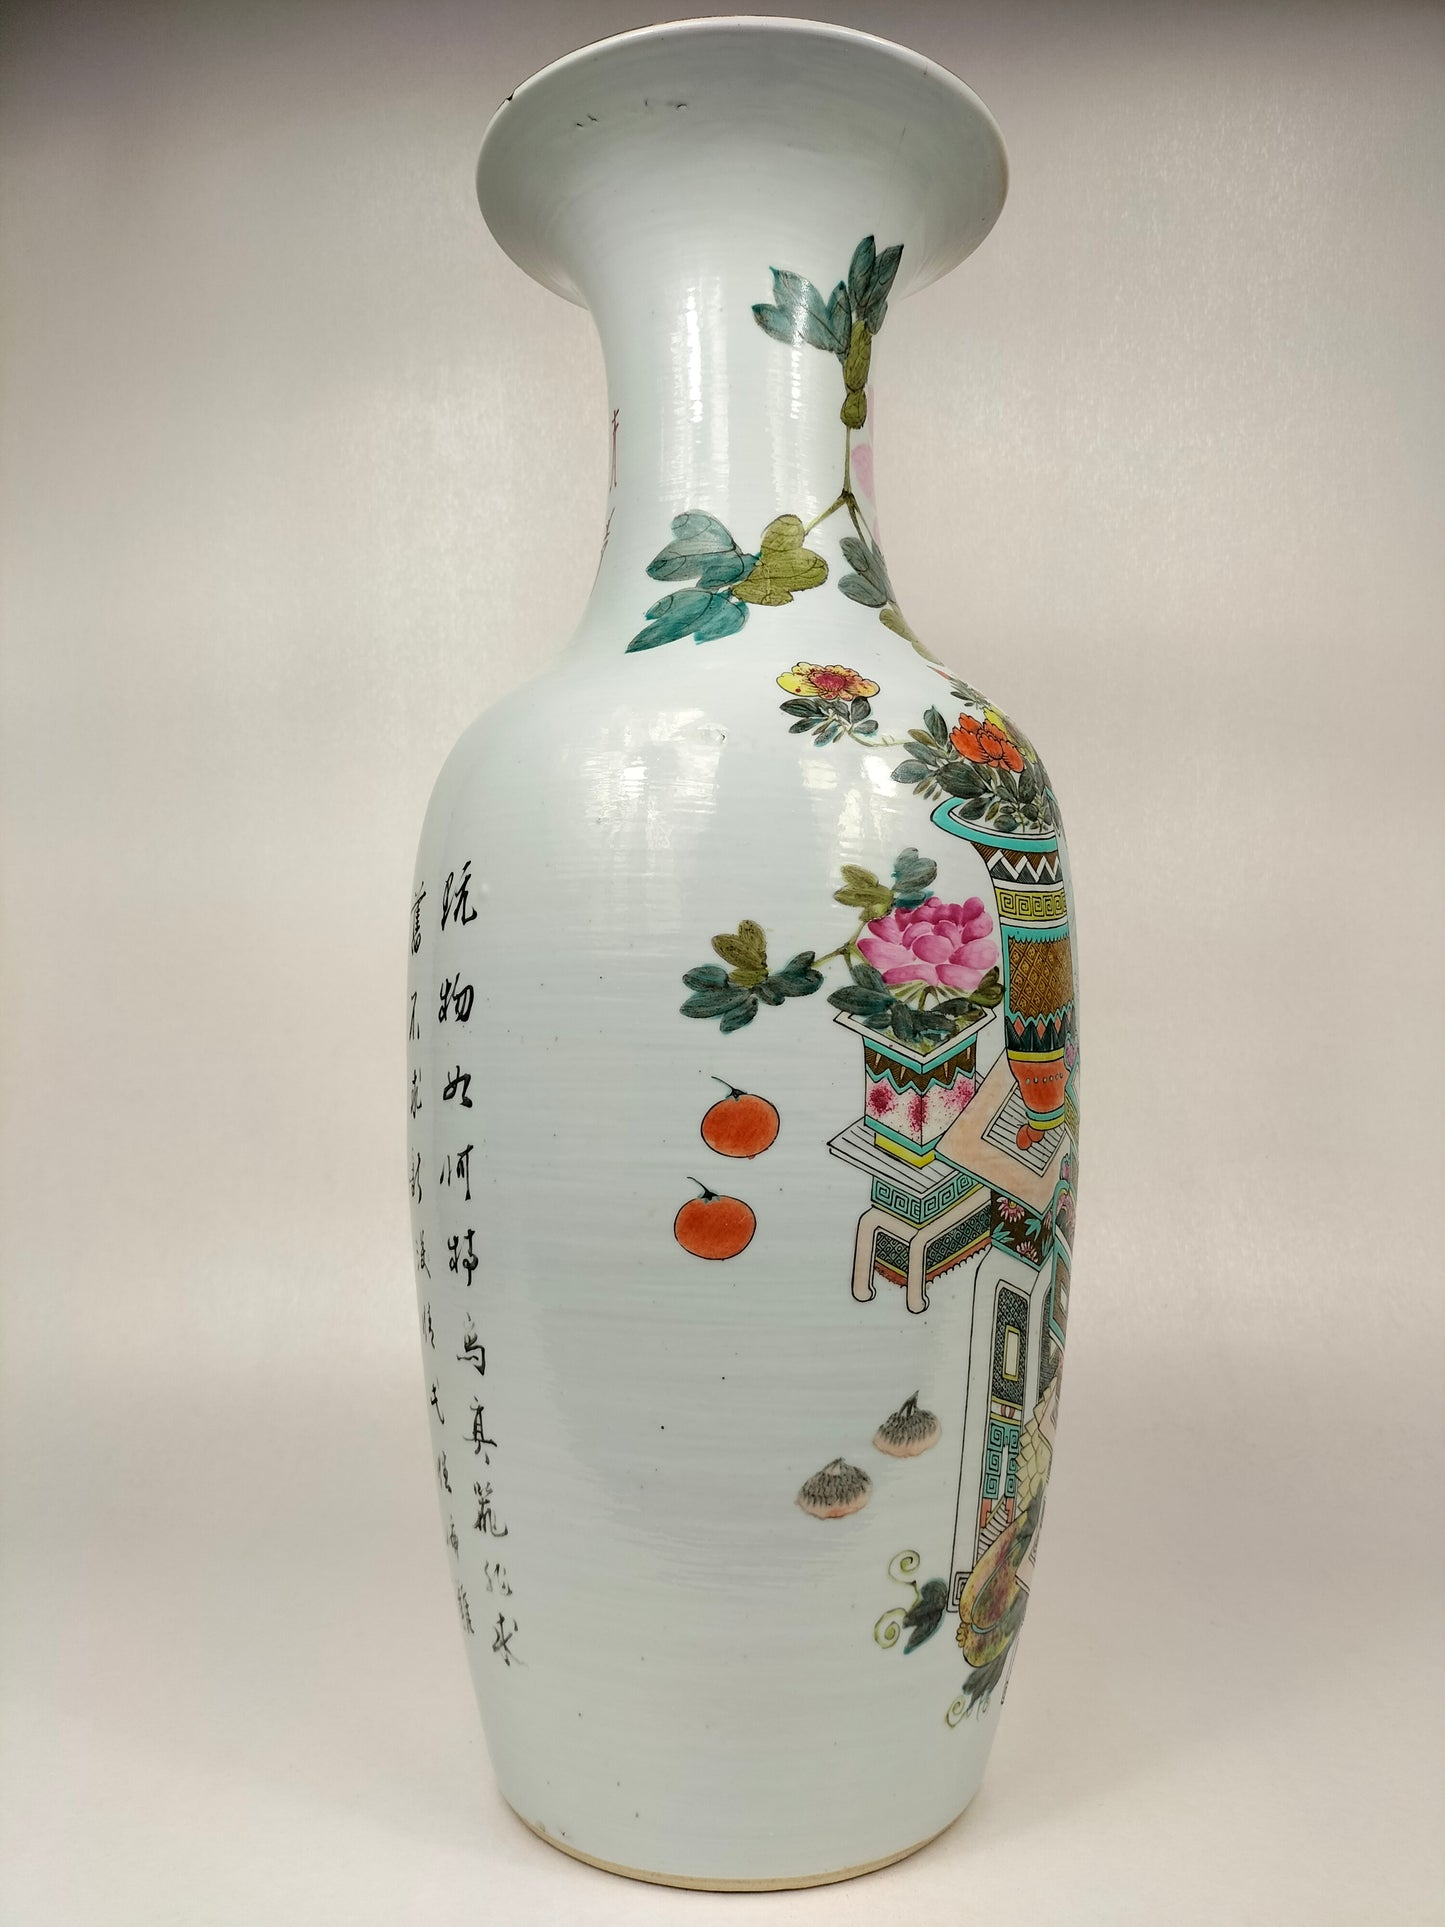 مزهرية تشيانجيانغ كاي الصينية العتيقة الكبيرة المزينة بالآثار // عهد أسرة تشينغ - كاليفورنيا. 1900